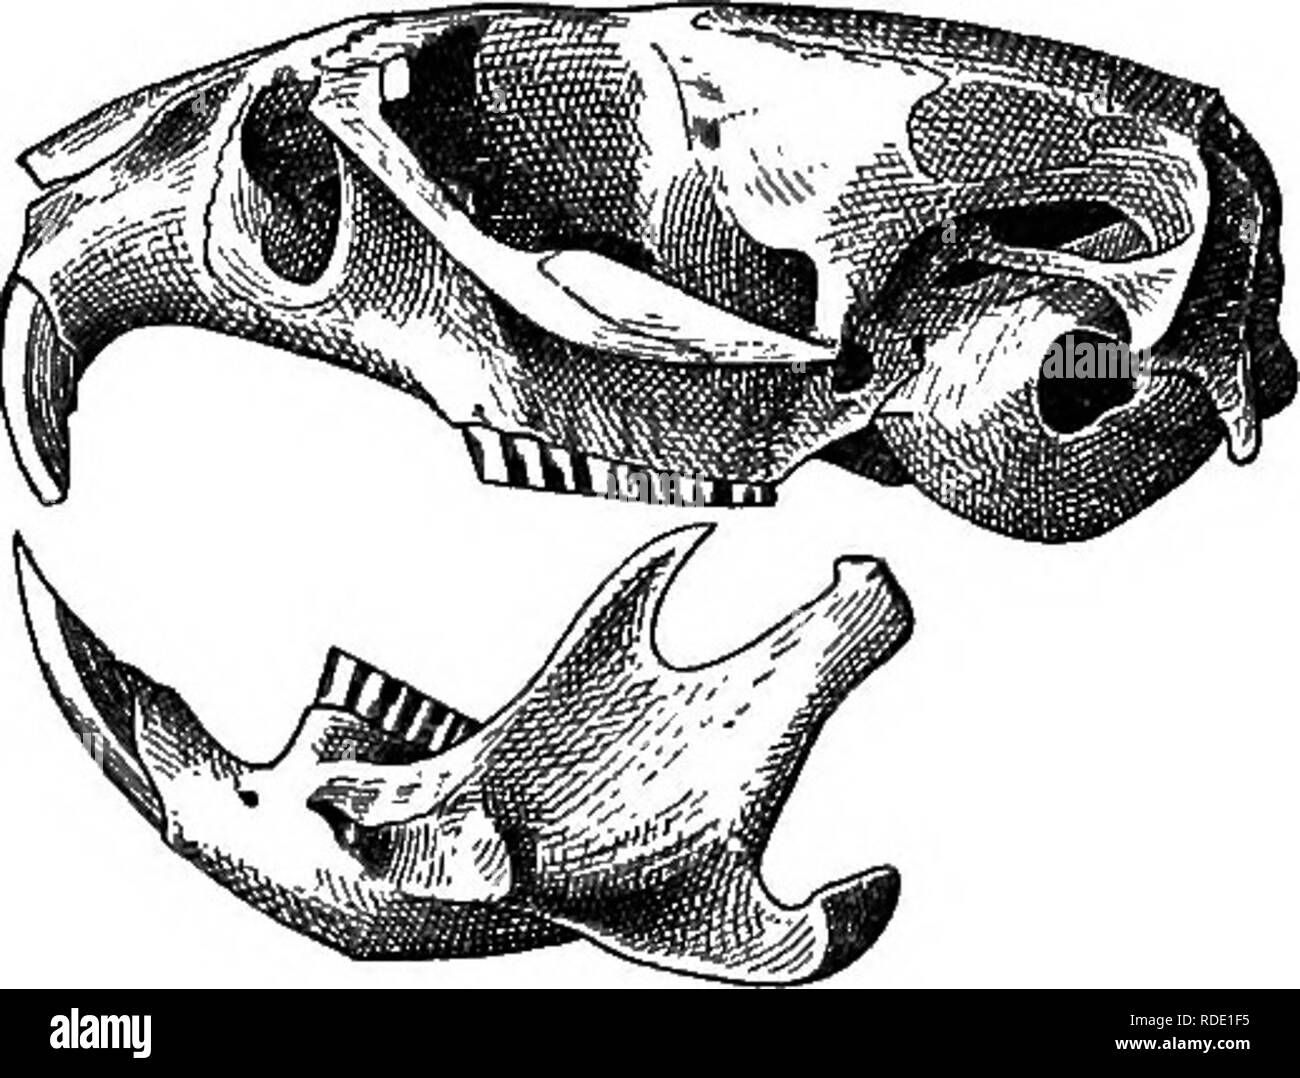 . Les mammifères de la frontière mexicaine des États-Unis : un catalogue descriptif des espèces de mammifères qui se produisent dans cette région ; avec un résumé général de l'histoire naturelle, et une liste d'arbres . Mammifères marins, les mammifères ARBRES ; ARBRES ; natural history ; histoire naturelle. a. b. c. Cochon. 125.-califoknicus Microtus. Un doesal Skvll., vue, 6, vue ventrale ; c, vue latérale. Description.-taille, grandes, seins, P.|, UN§, I.f  =4 paires ; crâne (fig. 125) avec une partie rostrale courte et déprimé ; dents comme indiqué en fig. 126 ; similaires à coloration du pelage Microtus edax ; pleine, longue, et plutôt doux ; réflexologie plantaire Banque D'Images